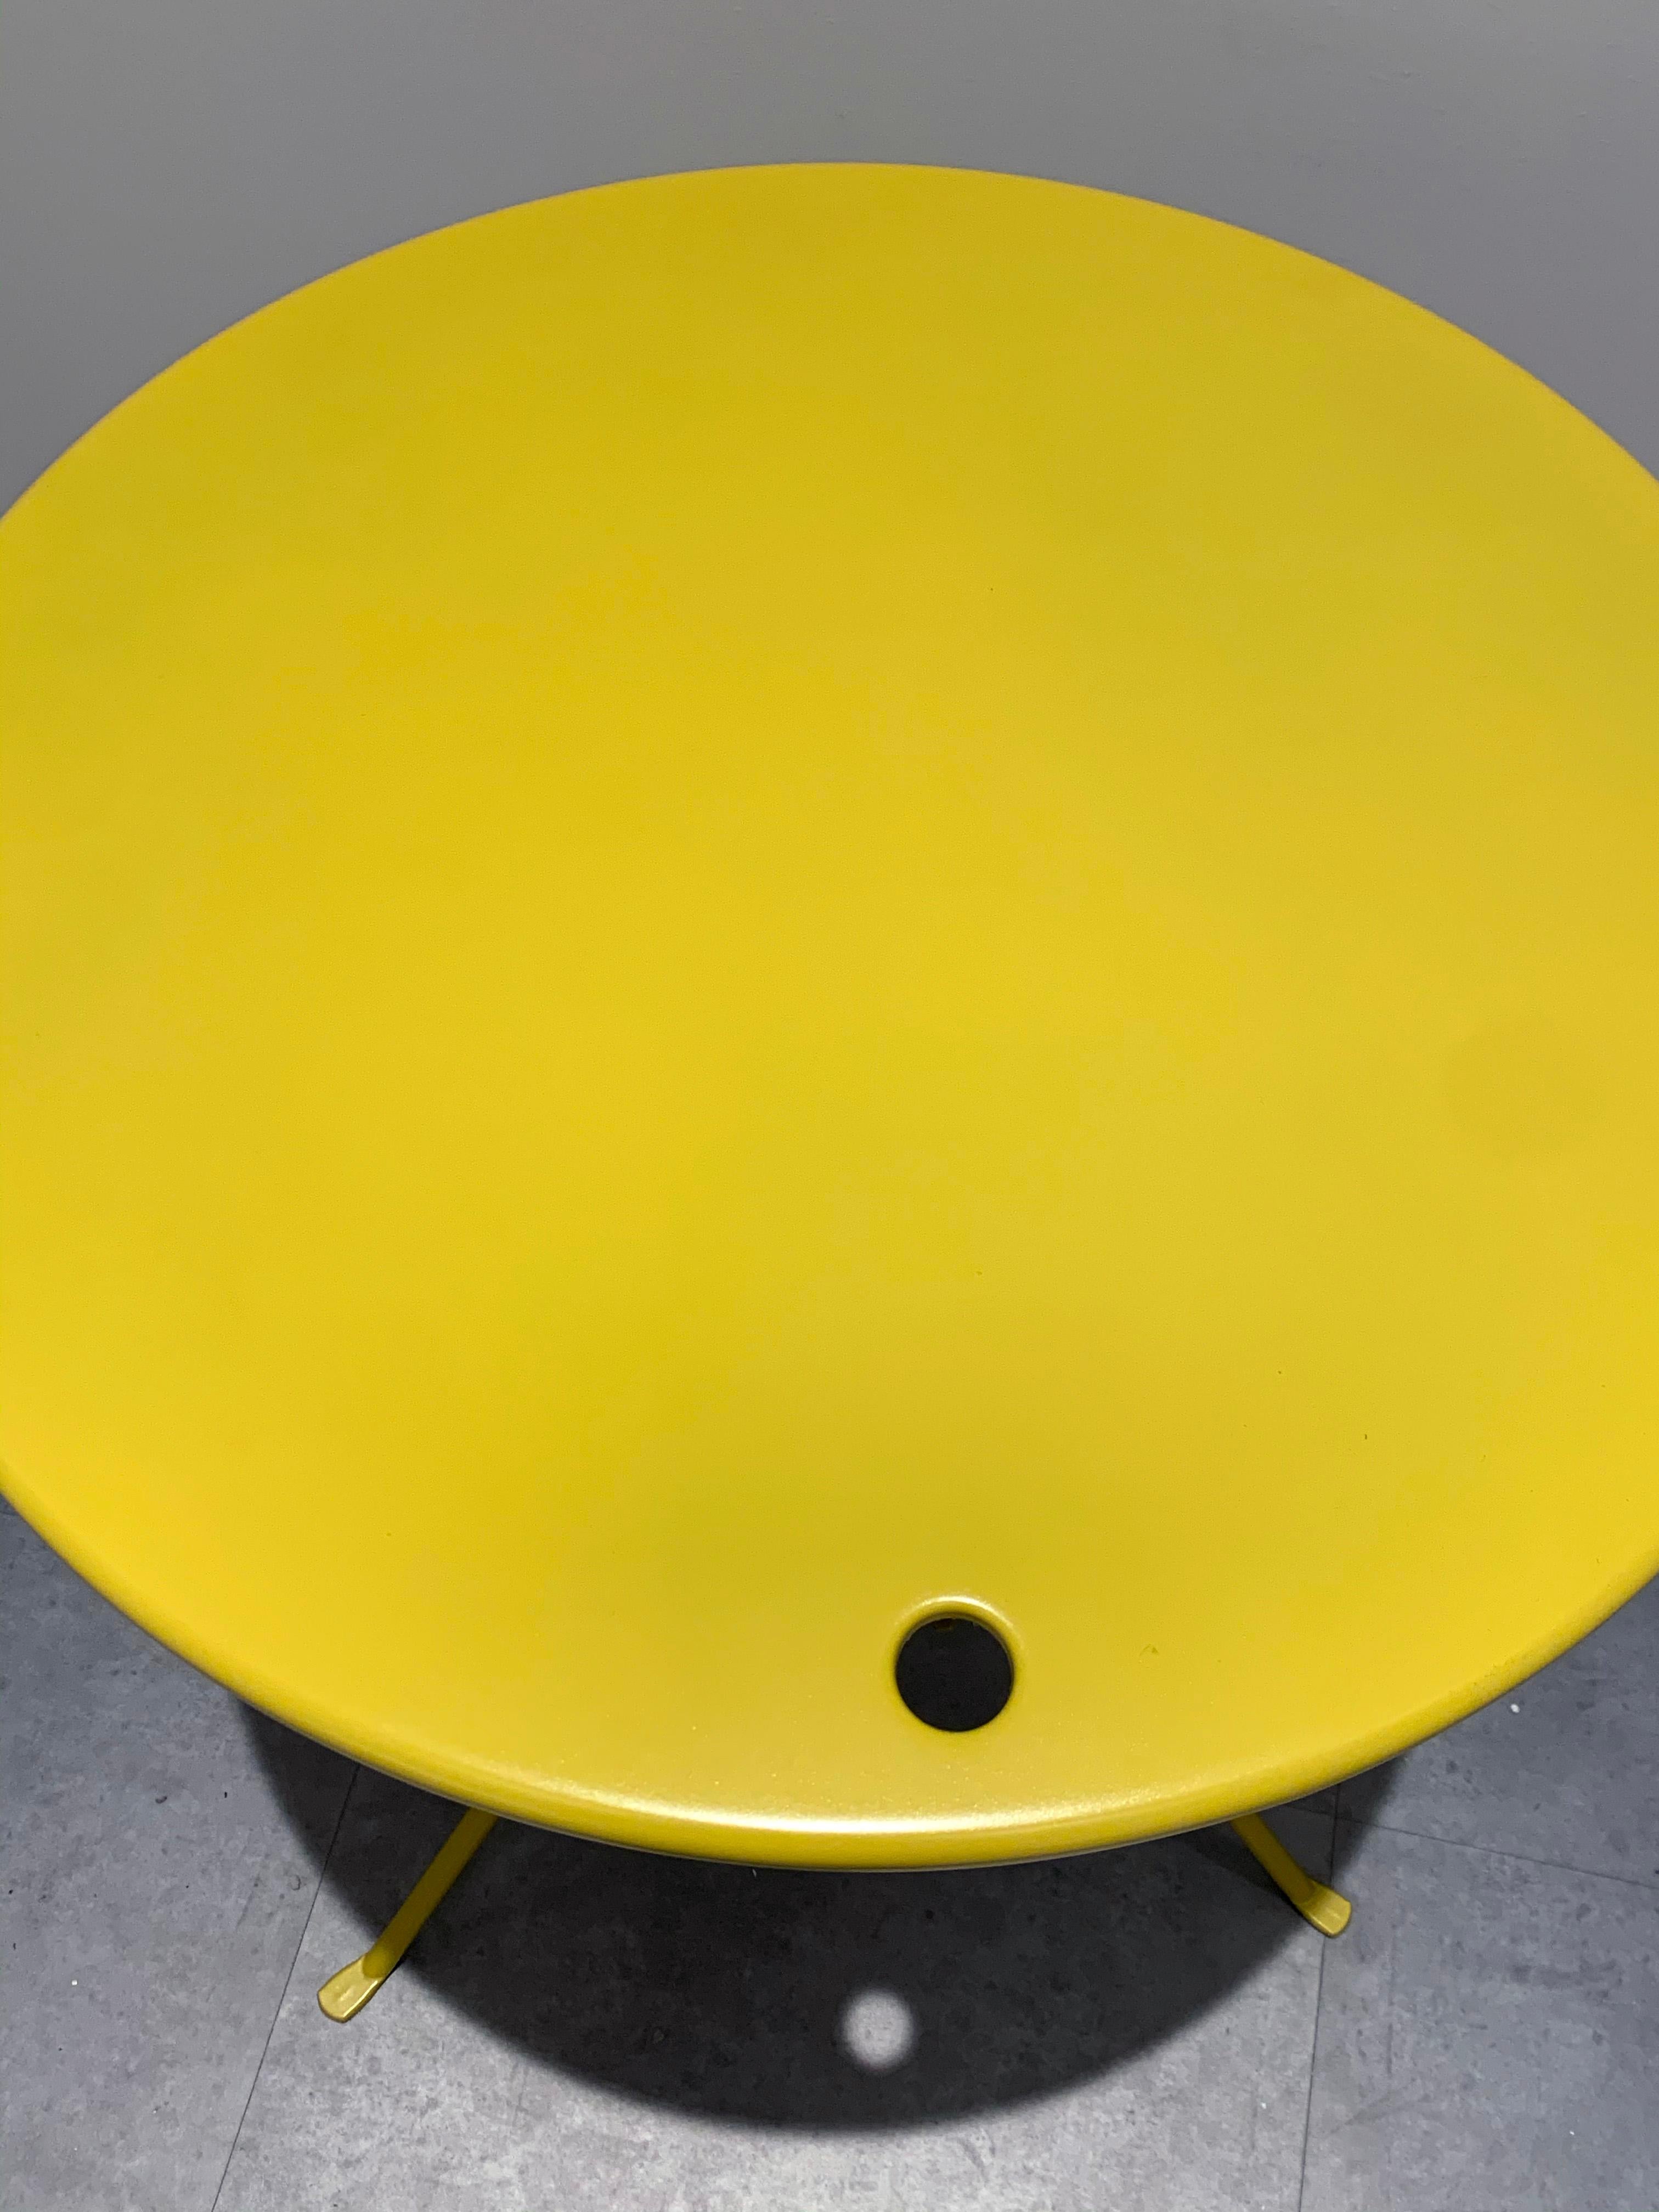 Zanotta Cumano Yellow Folding table designed by Achille Castiglioni 1